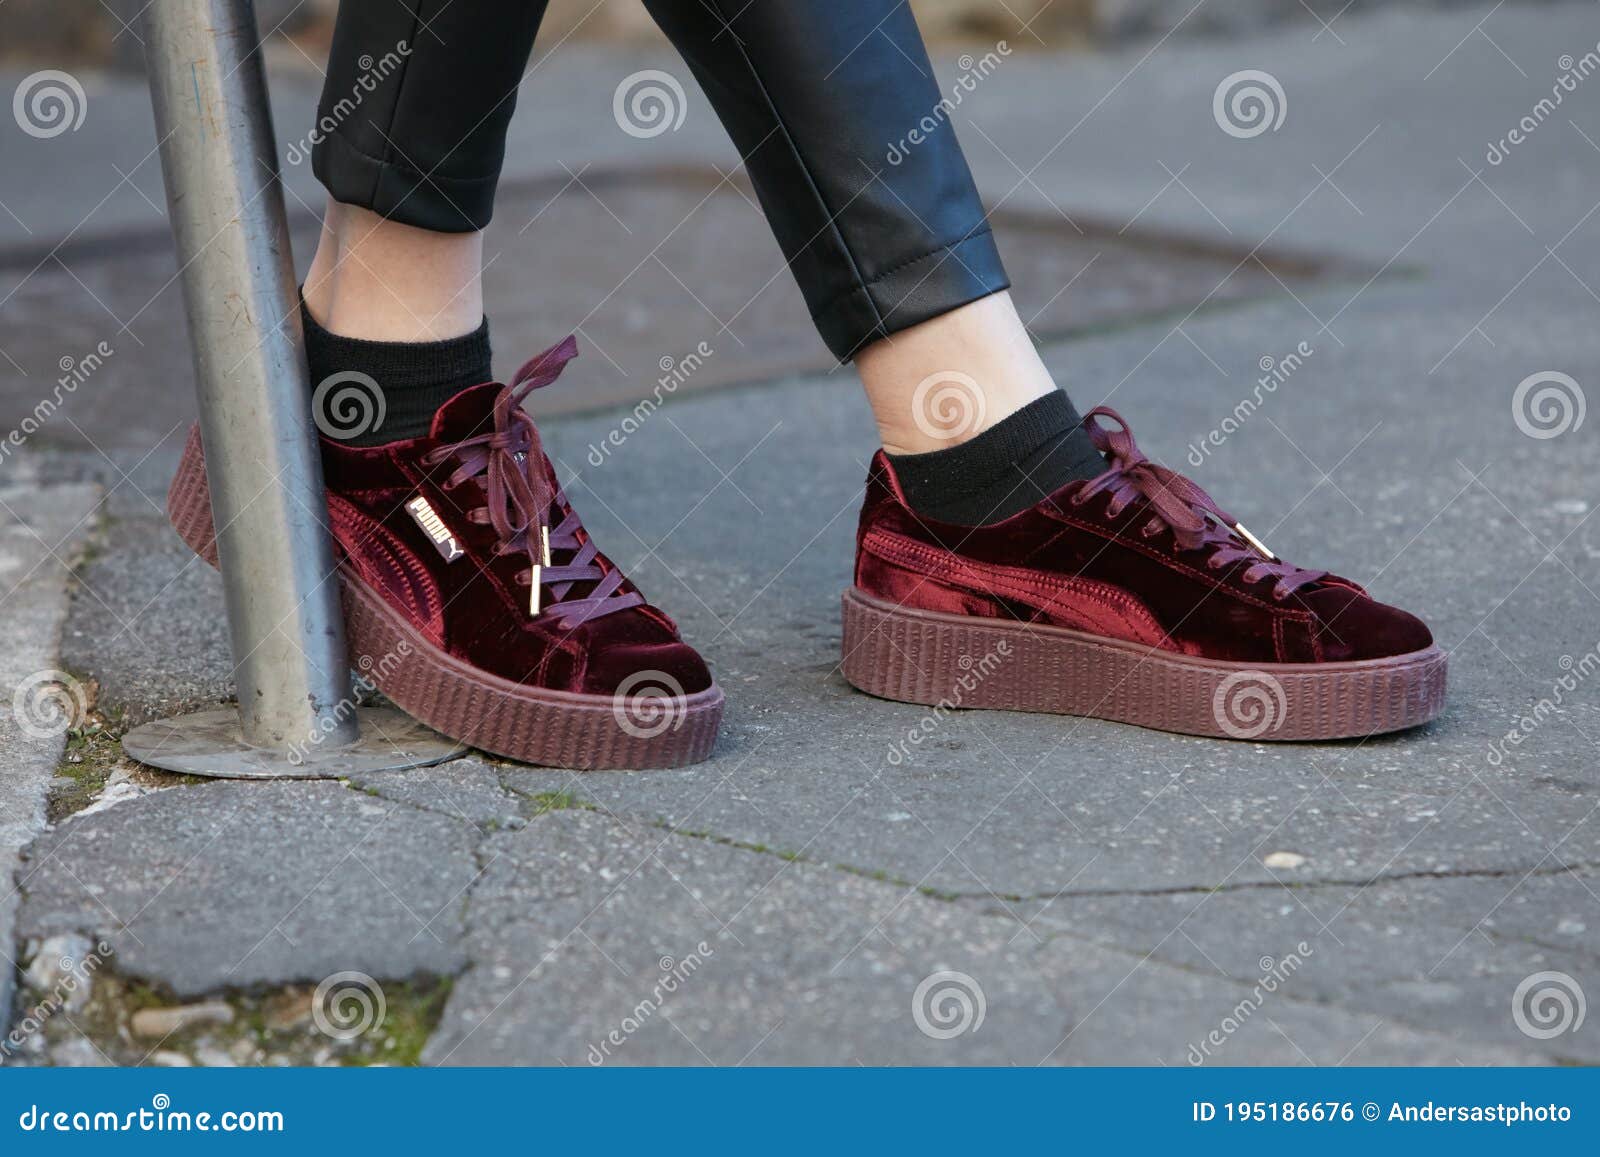 puma sneakers ladies 2017